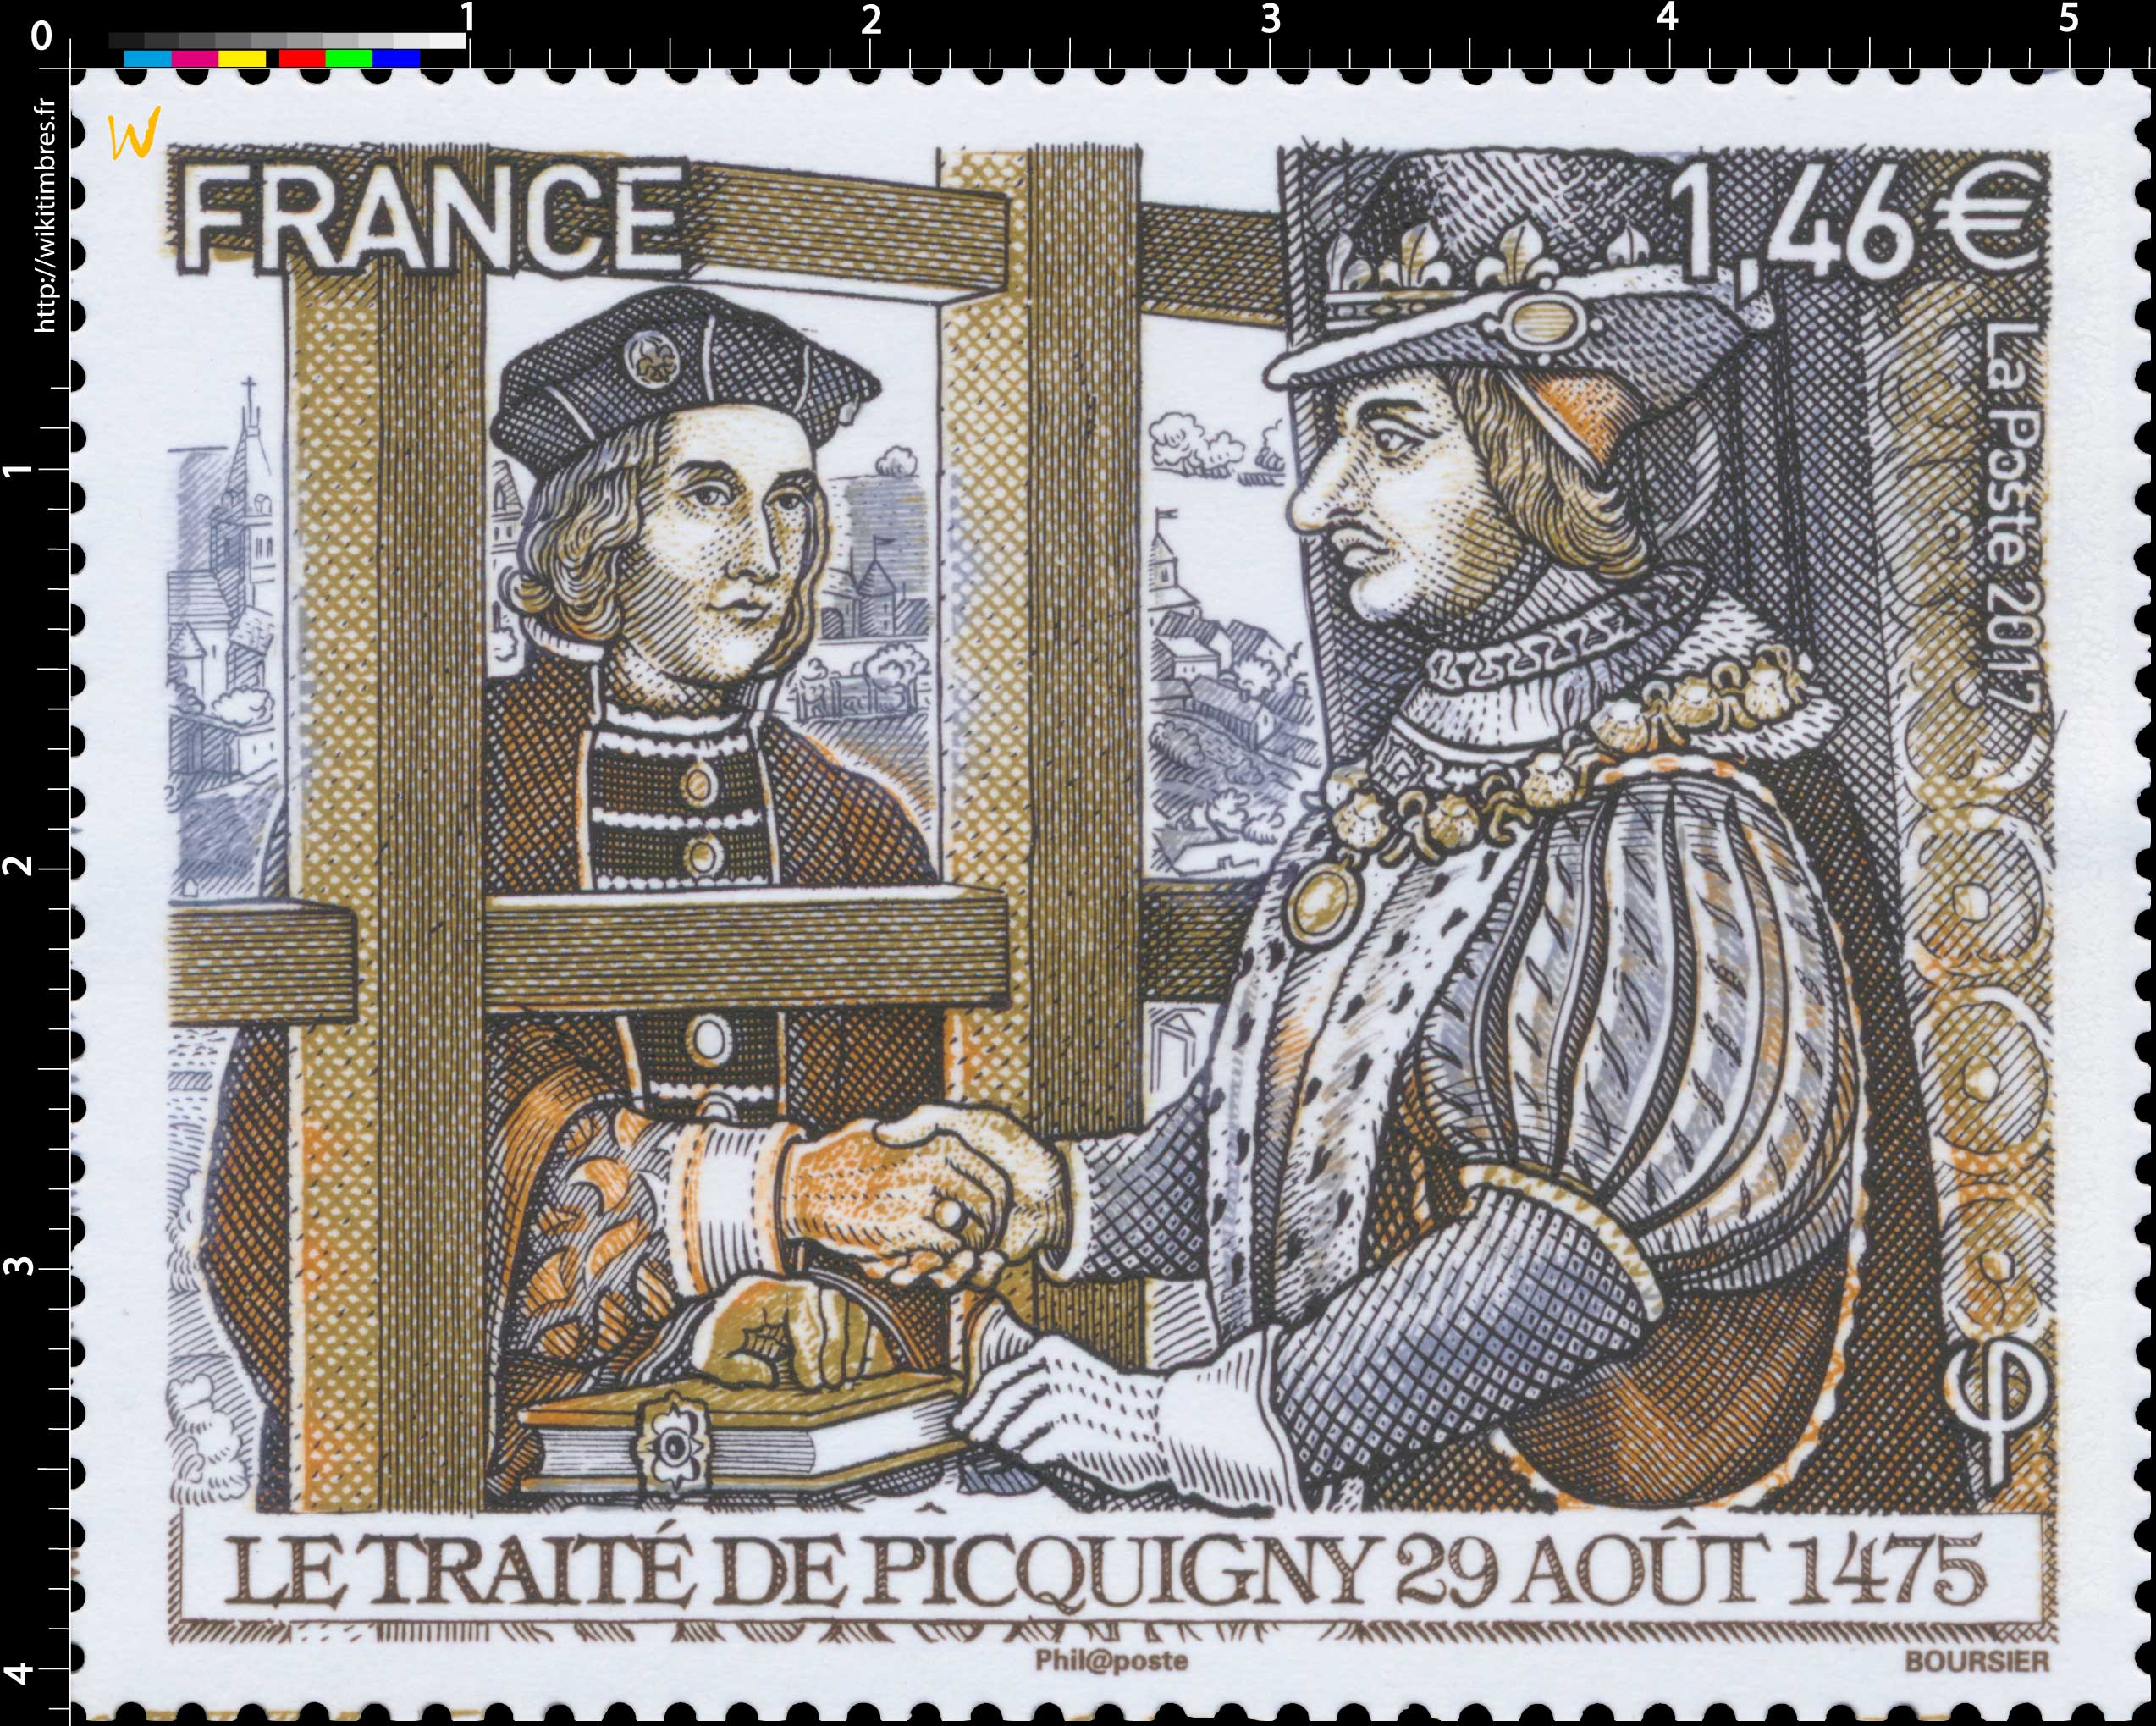 2017 Le traité de Picquigny 29 août 1475